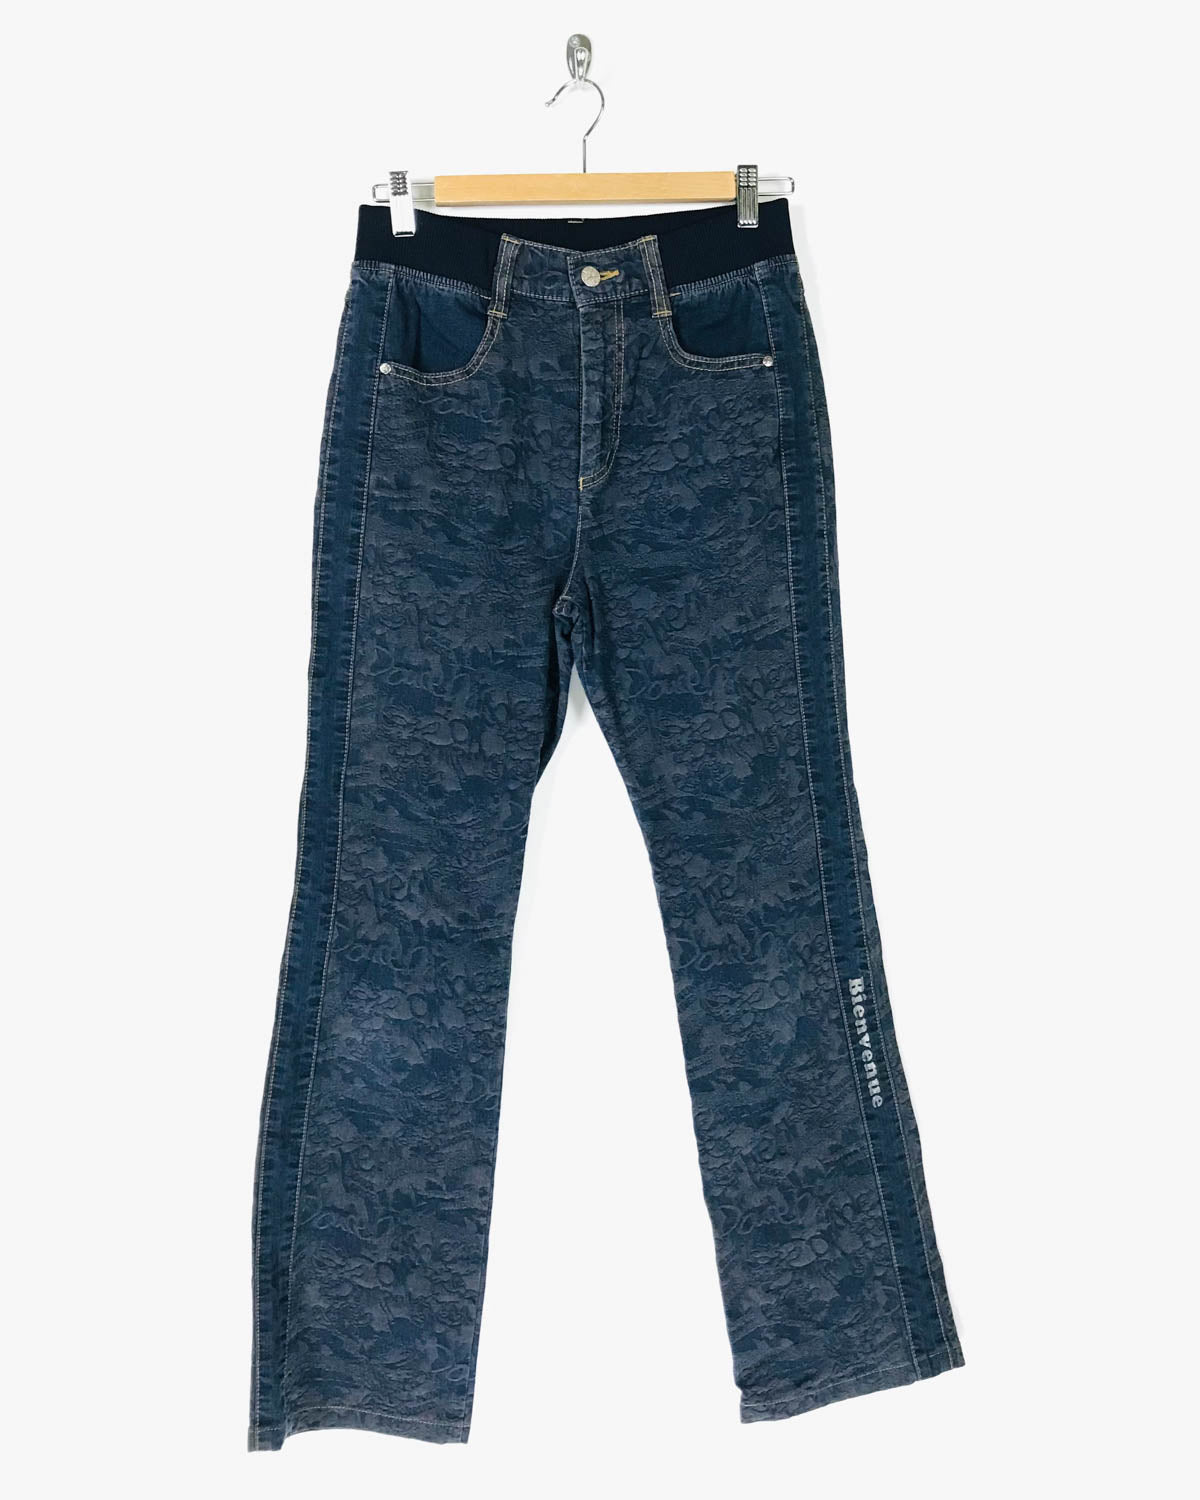 Jeans Vintage Stampati con Elastico Vita Alta Taglia S